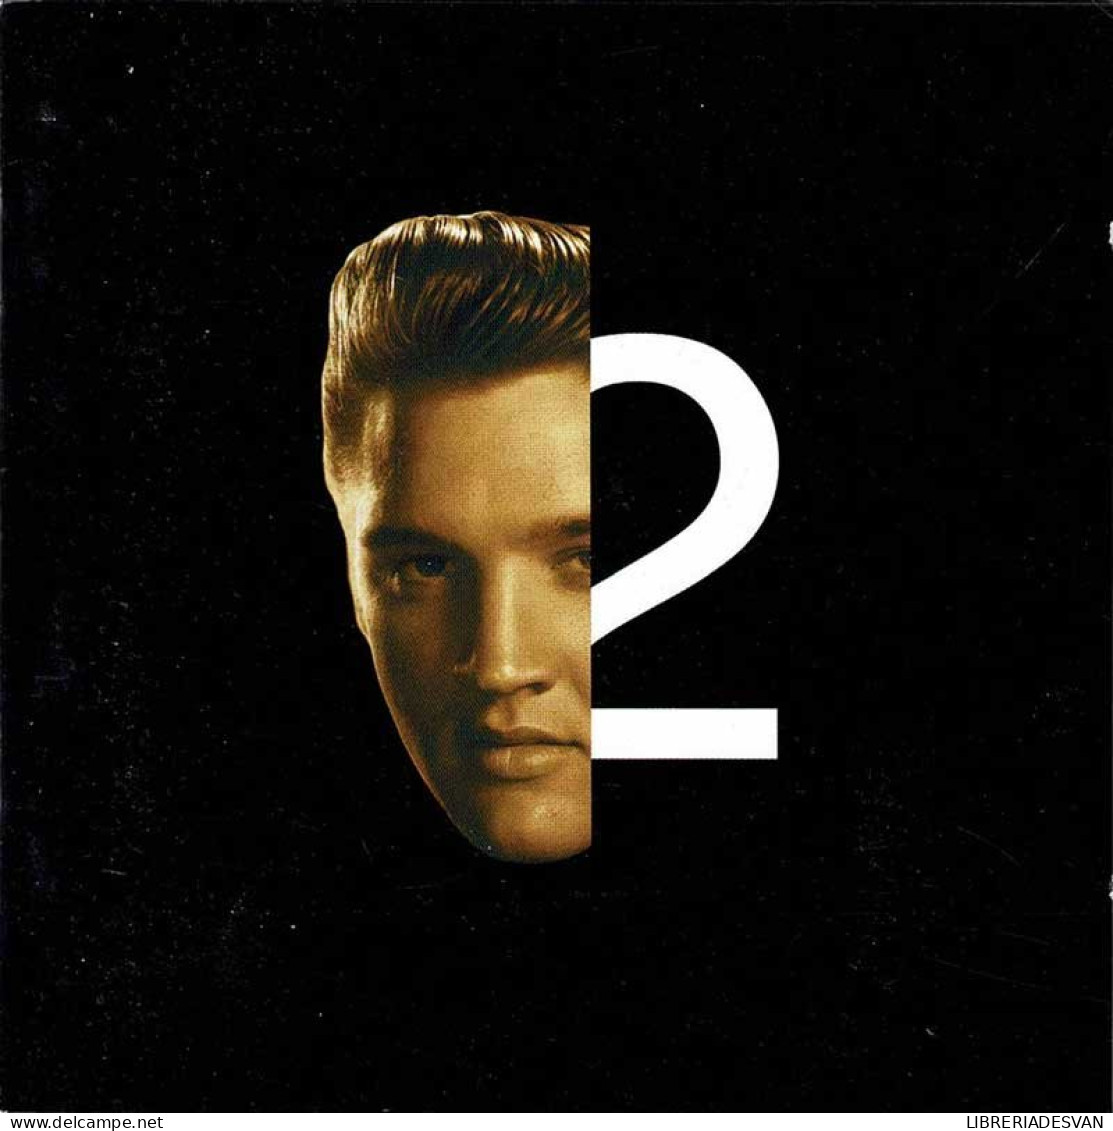 Elvis Presley - Elvis 2nd To None. CD - Rock